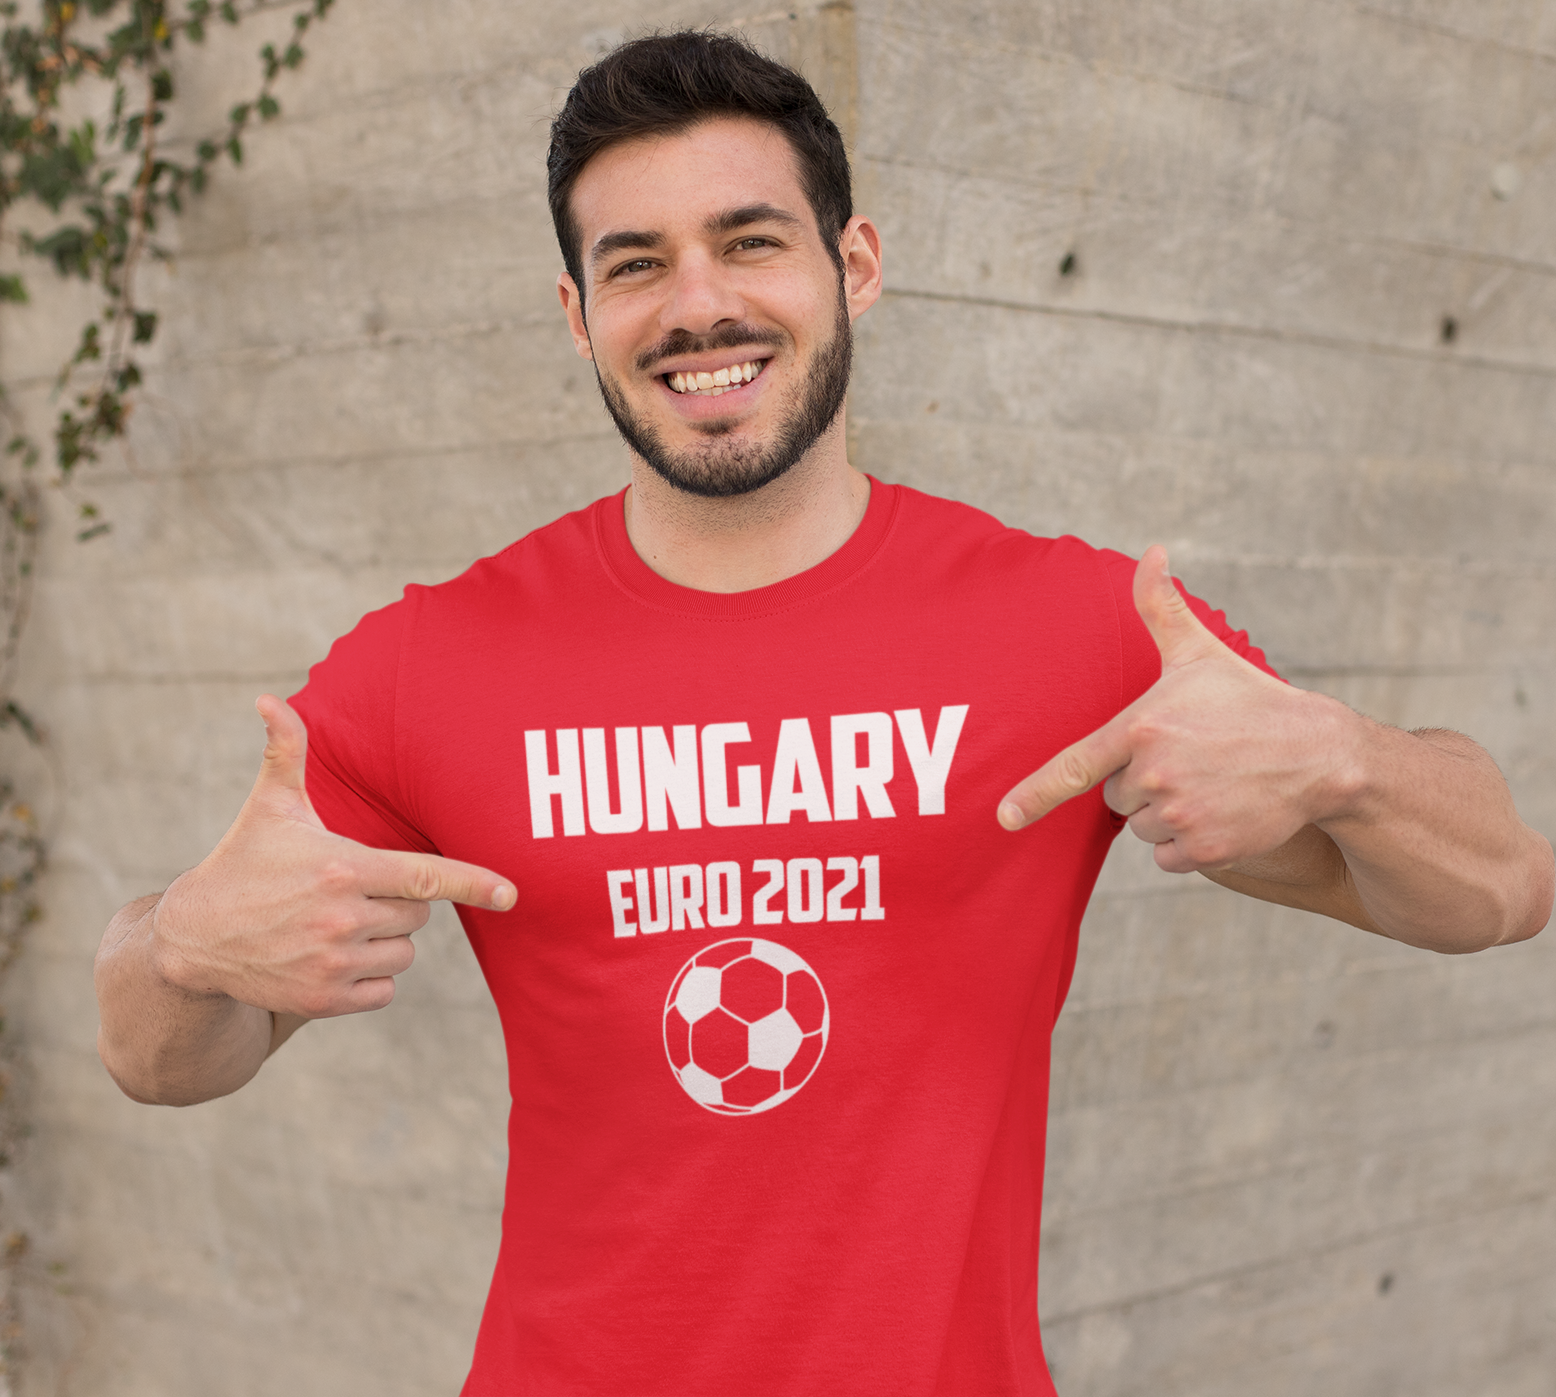  HUNGARY EURO 2021